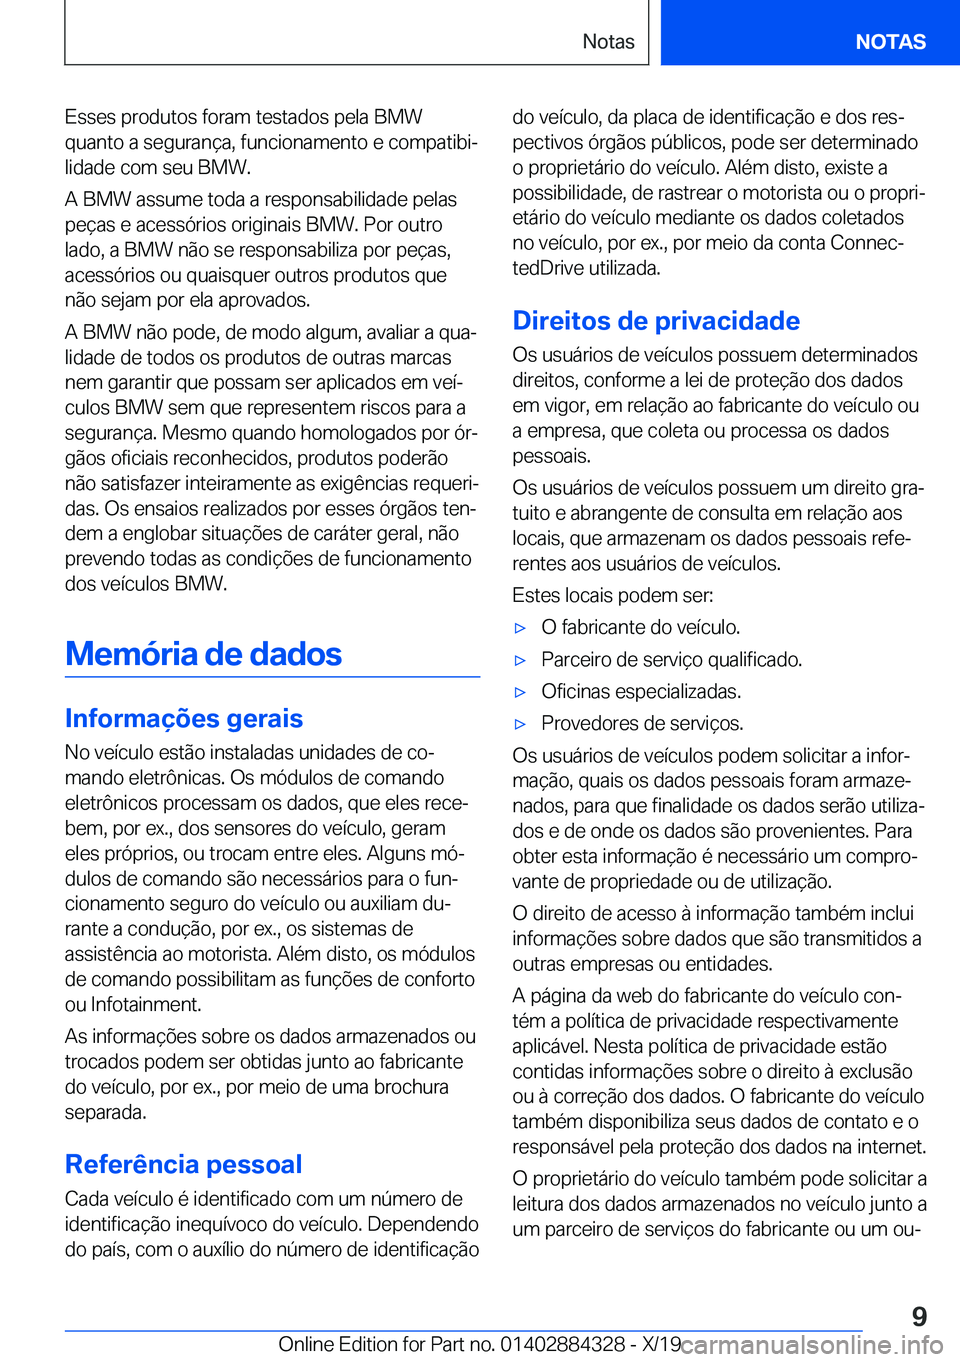 BMW 8 SERIES GRAN COUPE 2020  Manual do condutor (in Portuguese) �E�s�s�e�s��p�r�o�d�u�t�o�s��f�o�r�a�m��t�e�s�t�a�d�o�s��p�e�l�a��B�M�W�q�u�a�n�t�o��a��s�e�g�u�r�a�n�